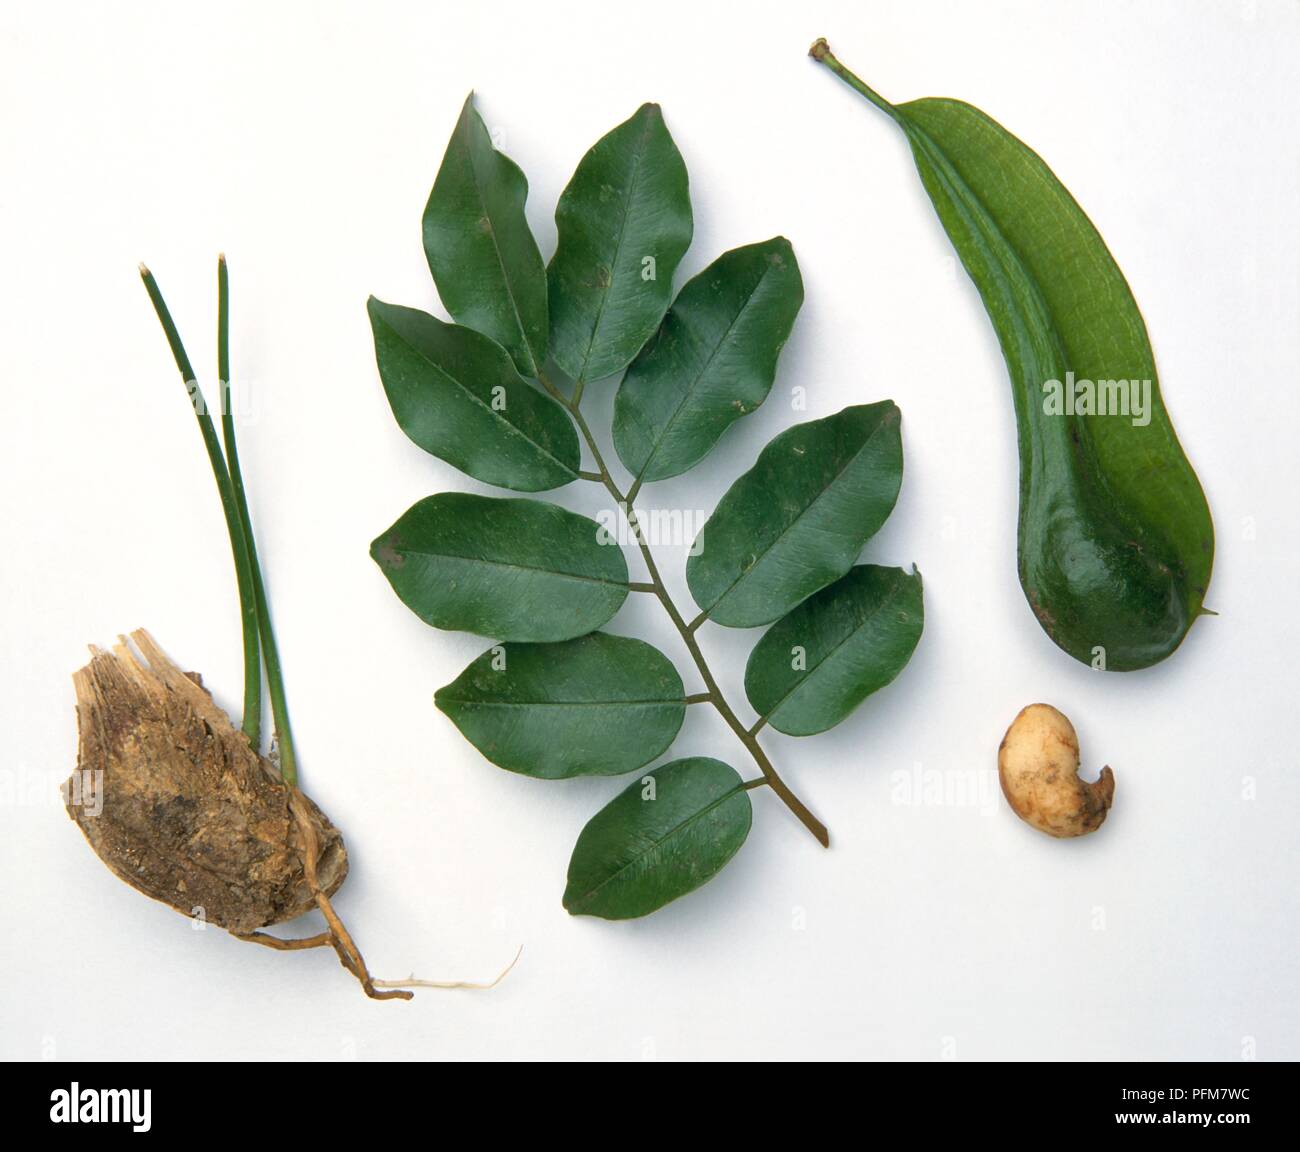 Myroxylon balsamum (Balsam von tolu), Früchte, Samen, grüne Blätter und Sämling Stockfoto